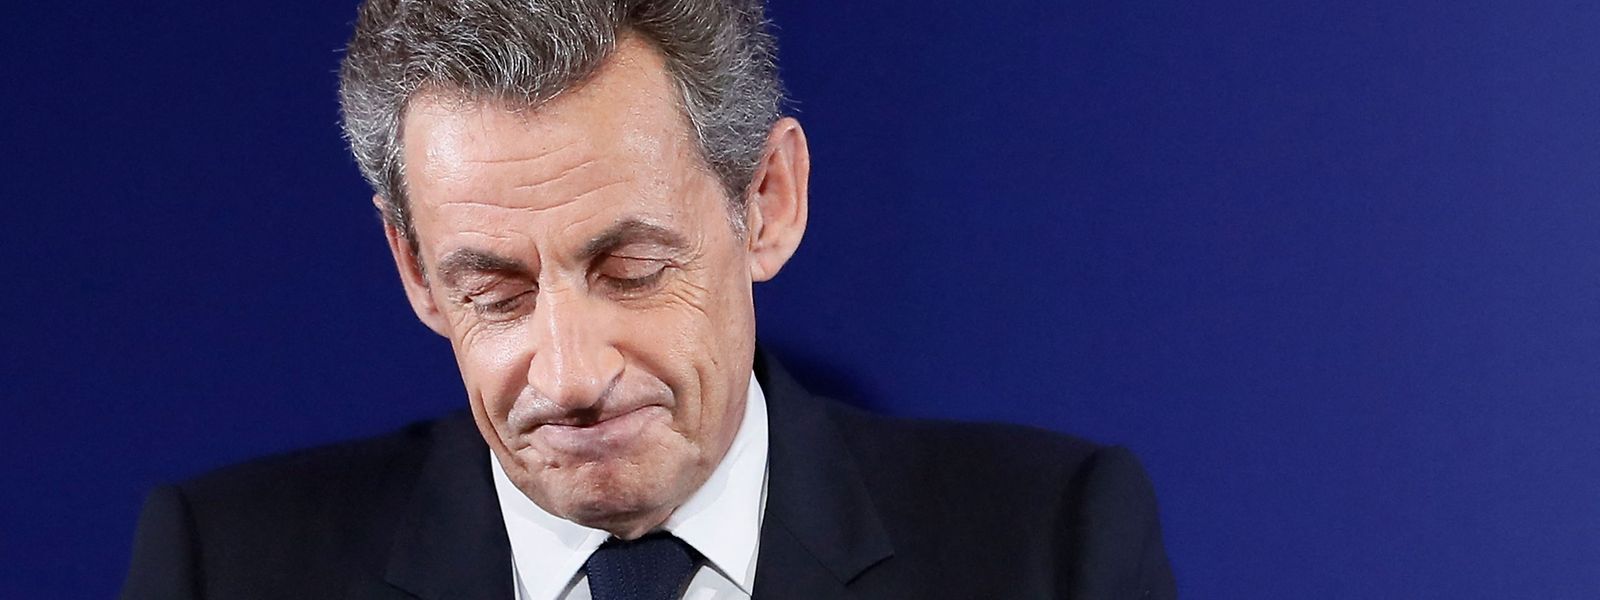 Sarkozys Team soll mindestens 42,8 Millionen ausgegeben haben, statt der erlaubten 22,5 Millionen Euro.